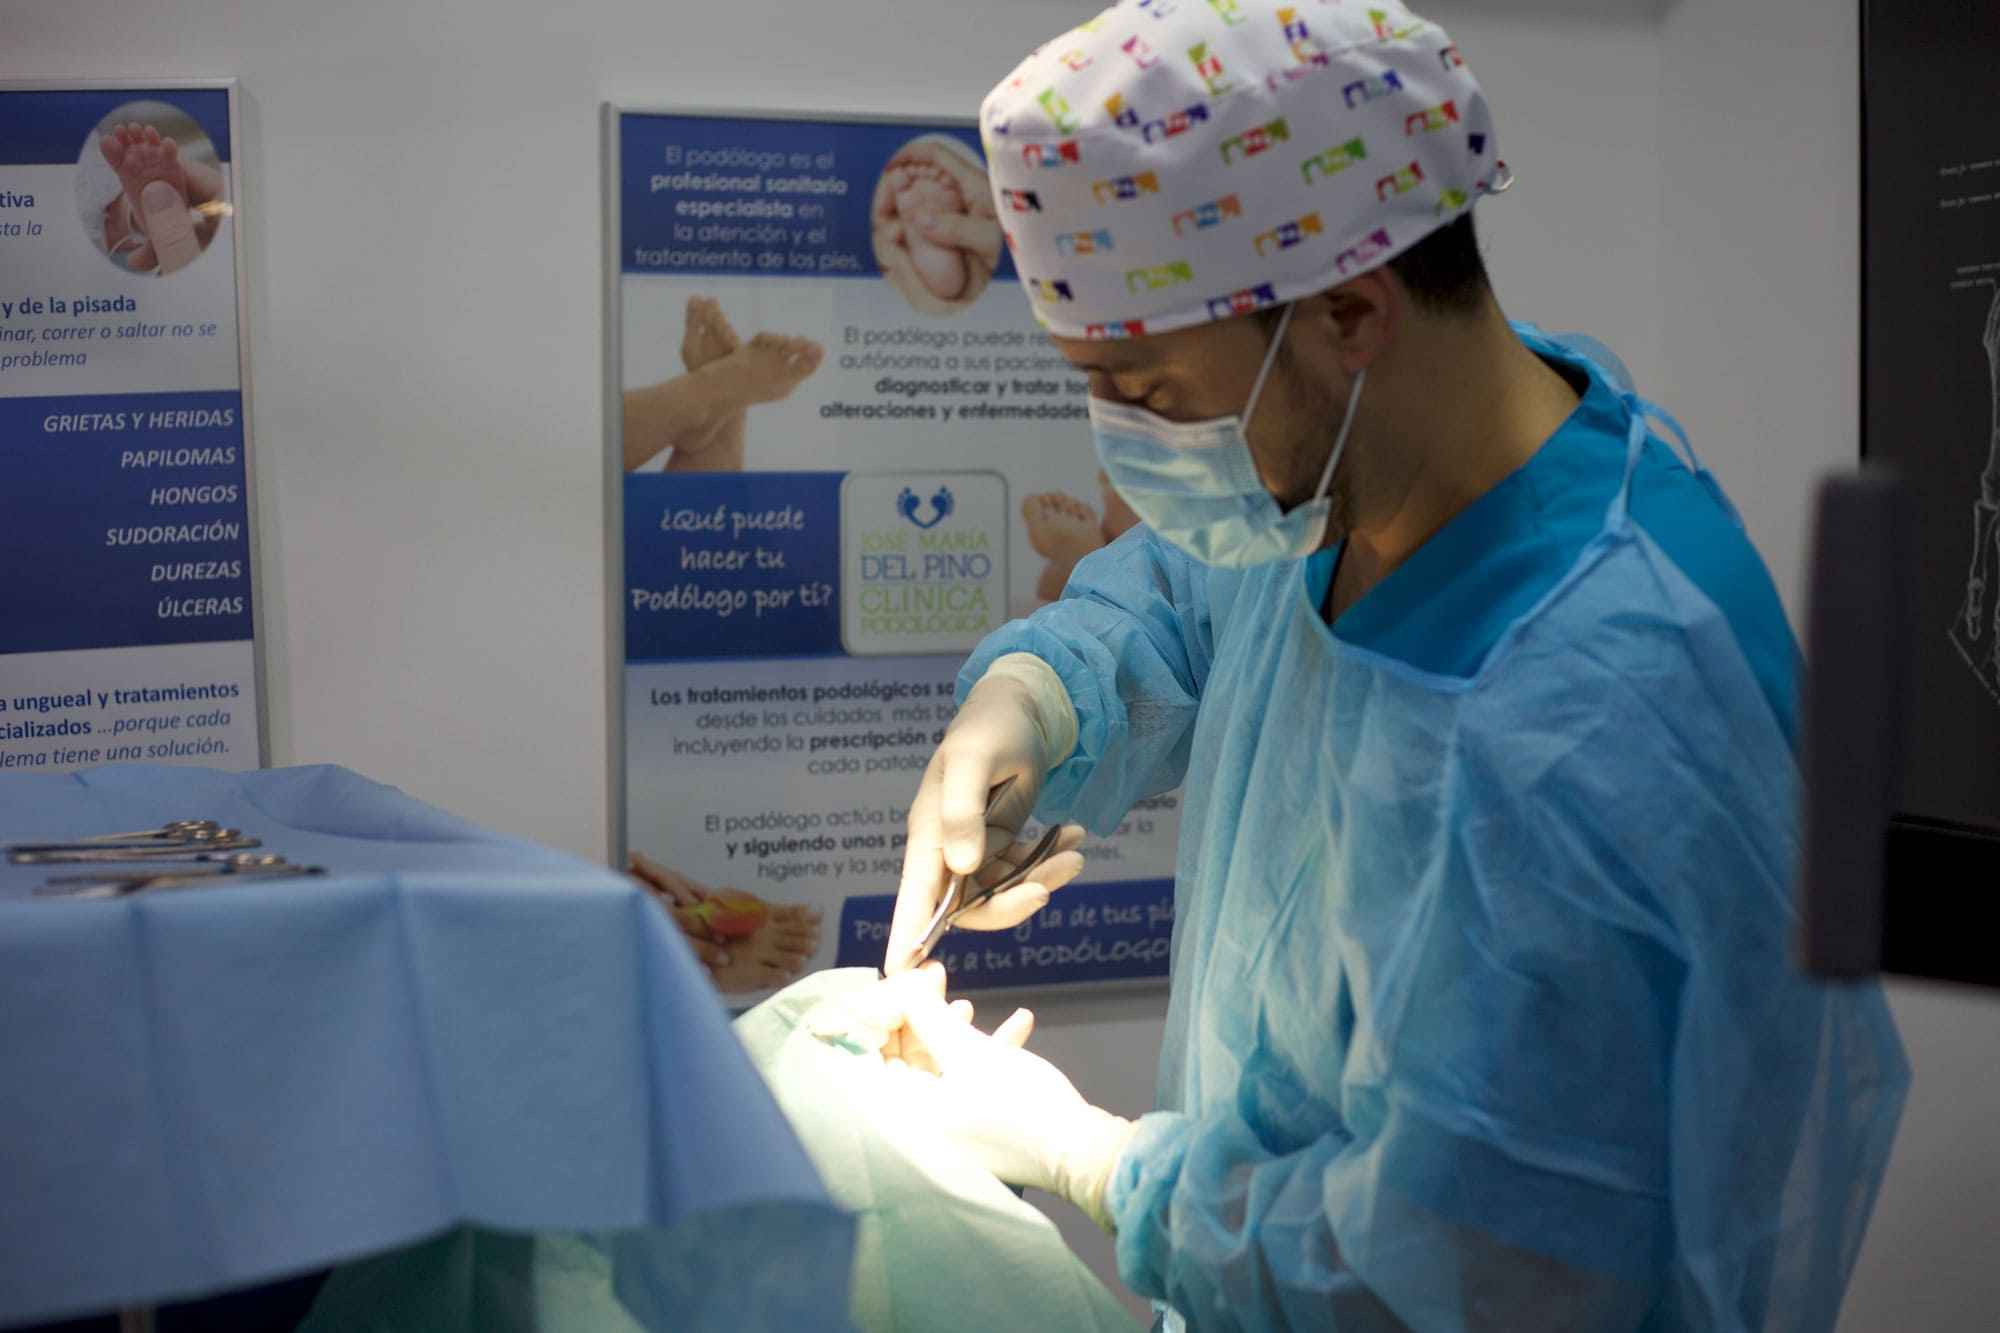 Clinica-podologia-del-pino-almeria-cirugia